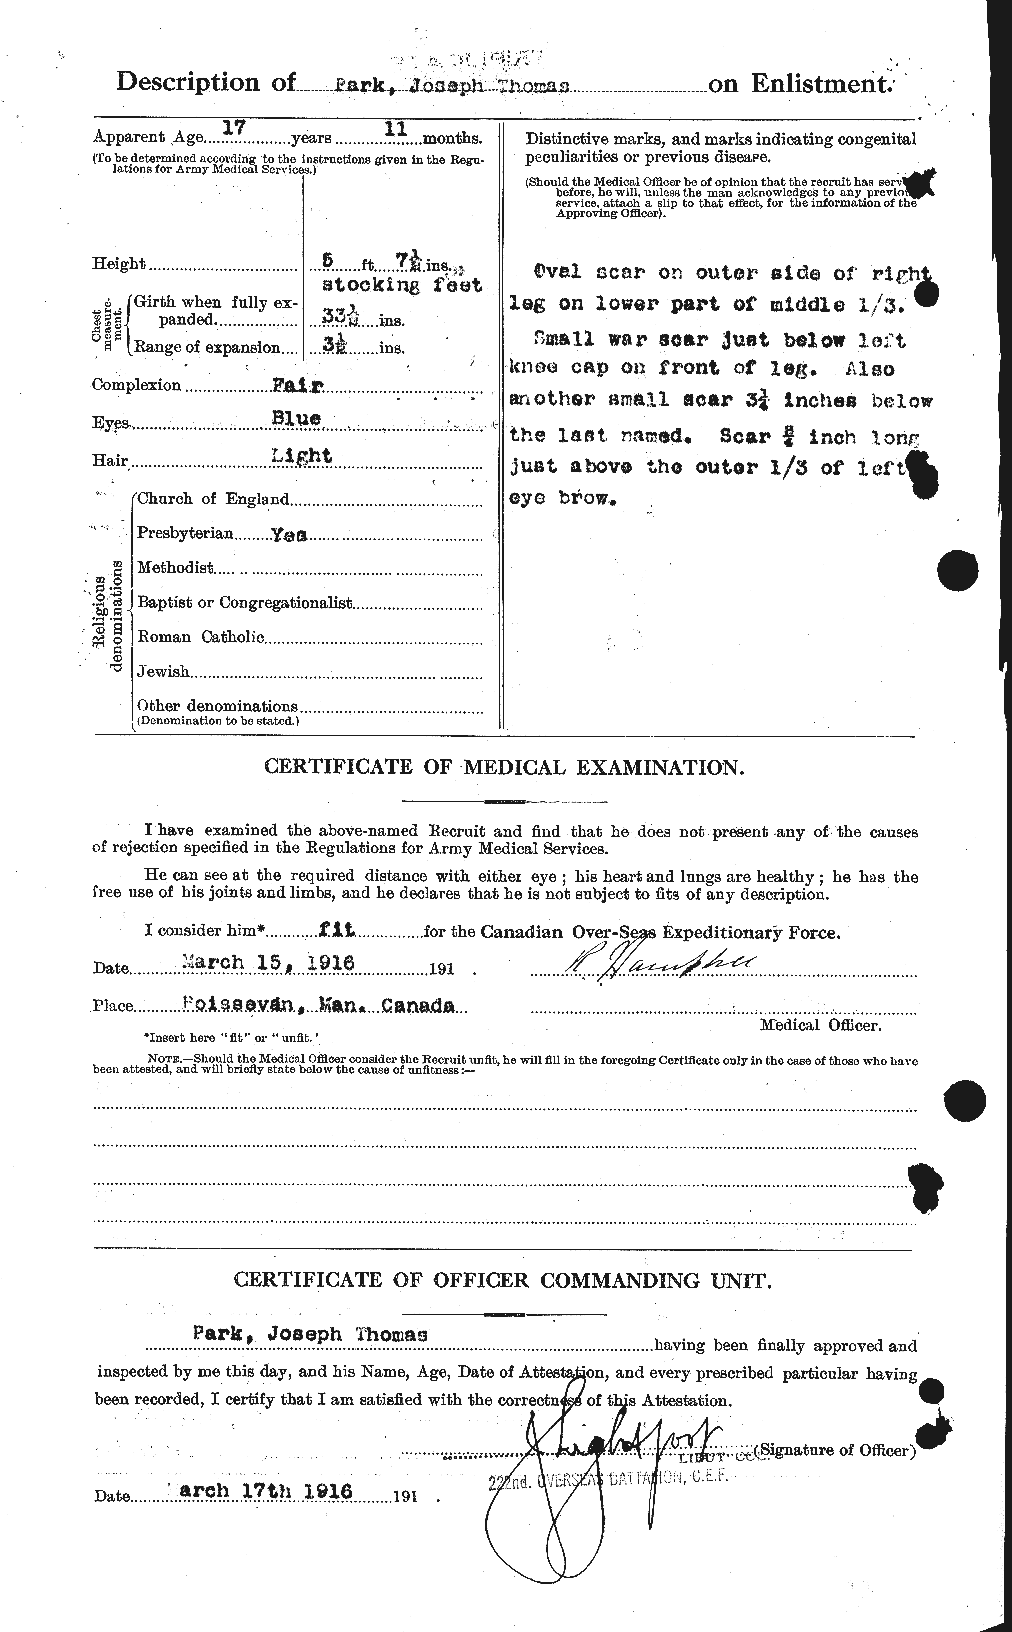 Dossiers du Personnel de la Première Guerre mondiale - CEC 564843b